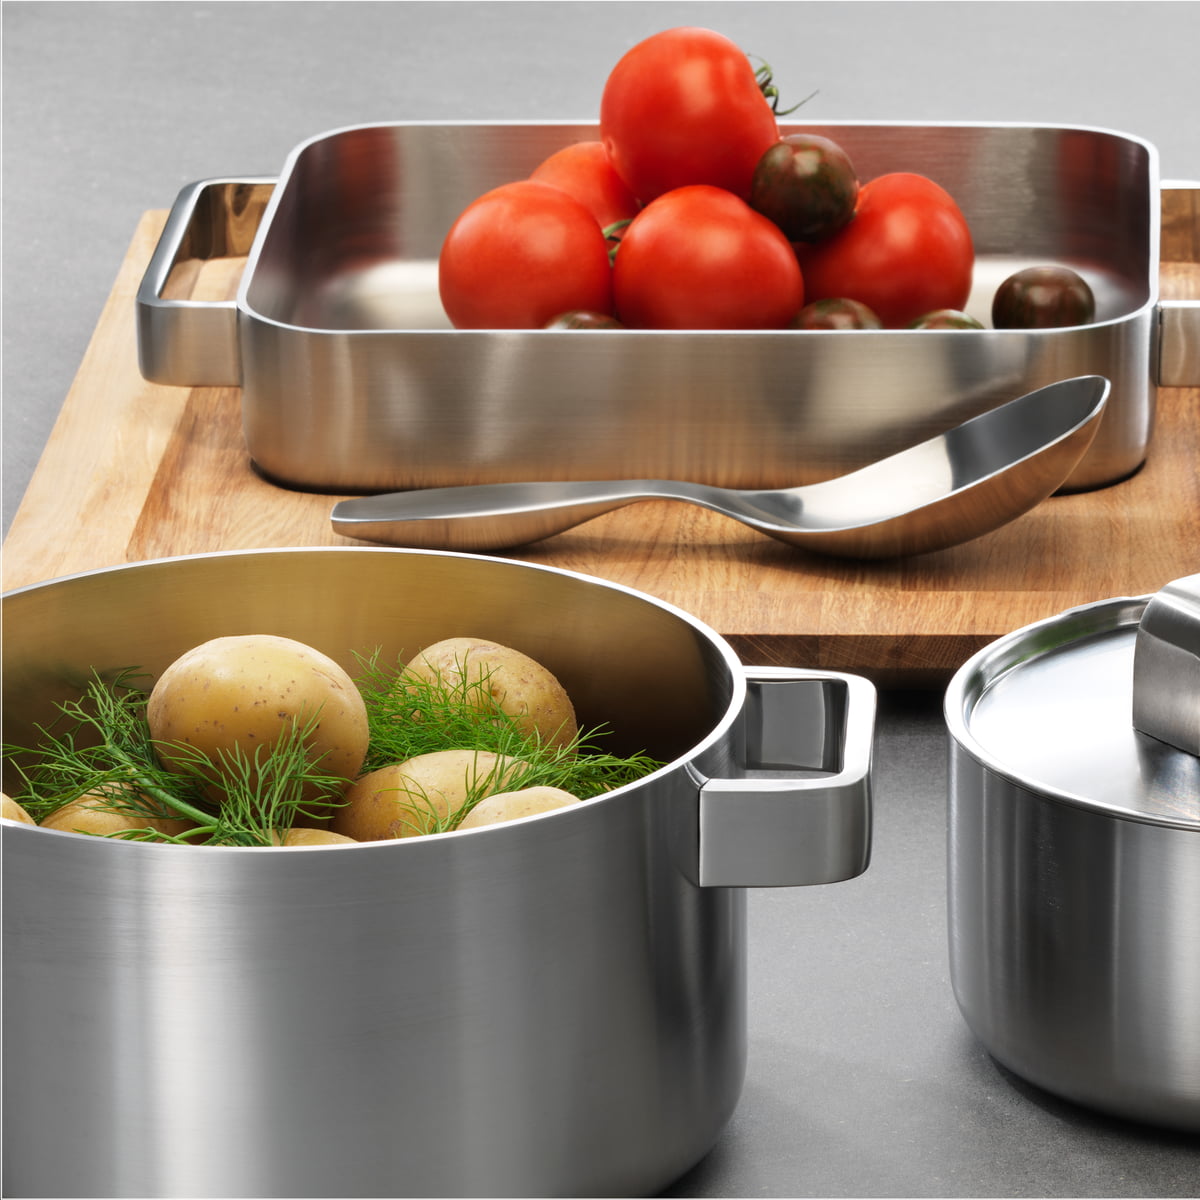 Pots Kitchen Cookware Set, Pots Pans Kitchen Set, Hermes Cookware Set